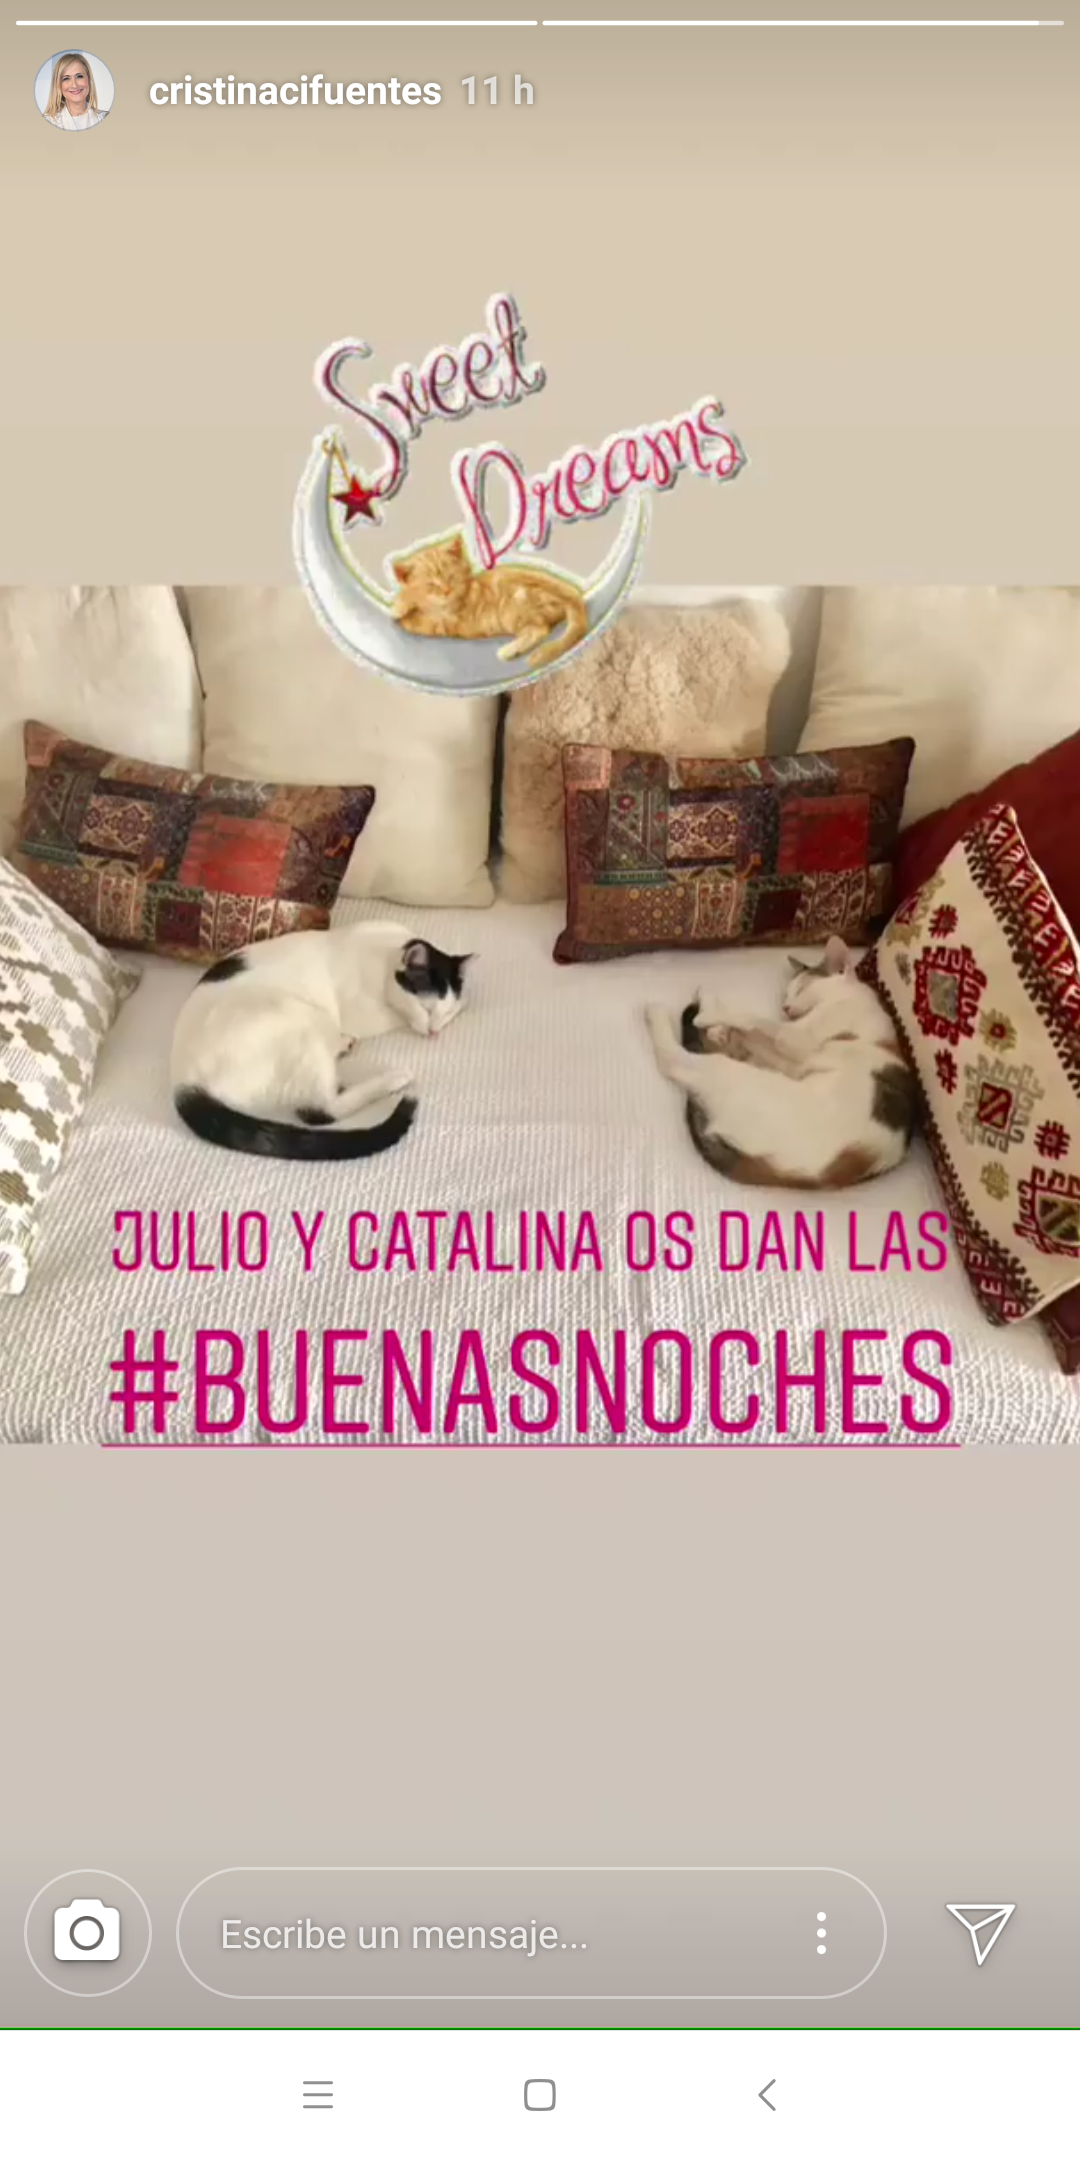 Imagen subida por Cristina Cifuentes con sus gatos a su cuenta de Instagram